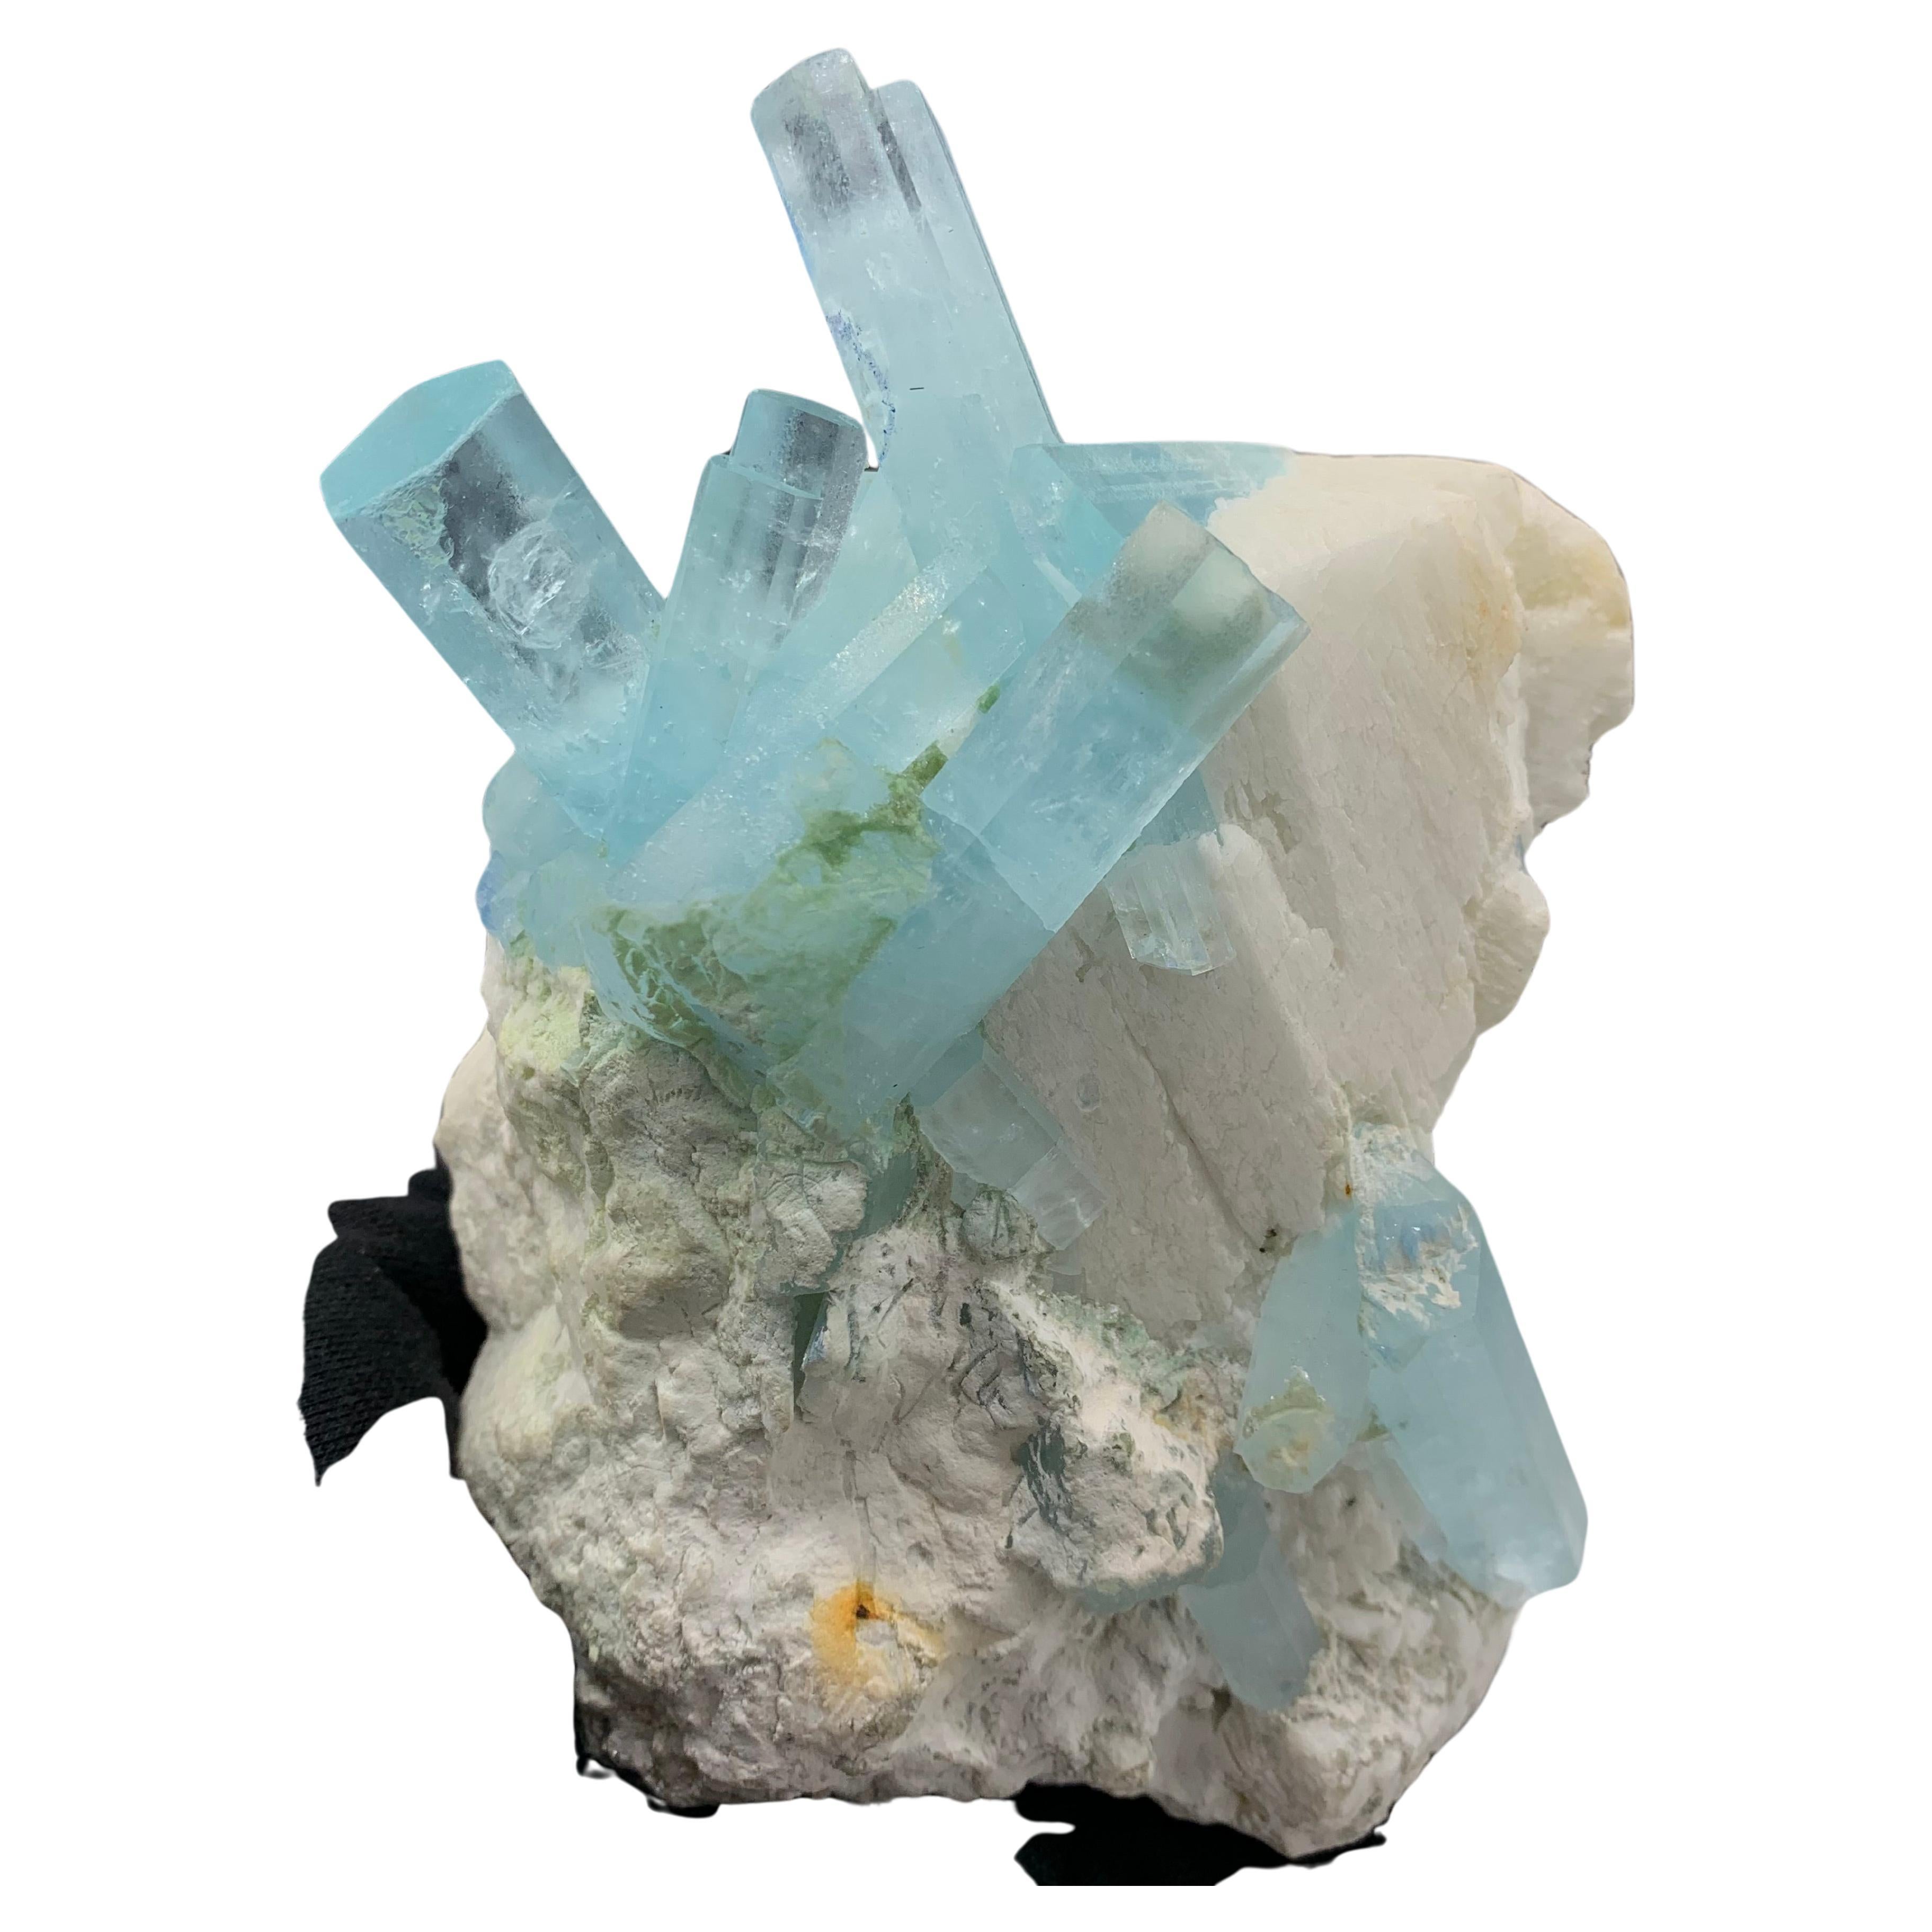 2 kg Plus Pretty Aquamarine Crystal Bunch Attach With Feldspar From Pakistan  For Sale